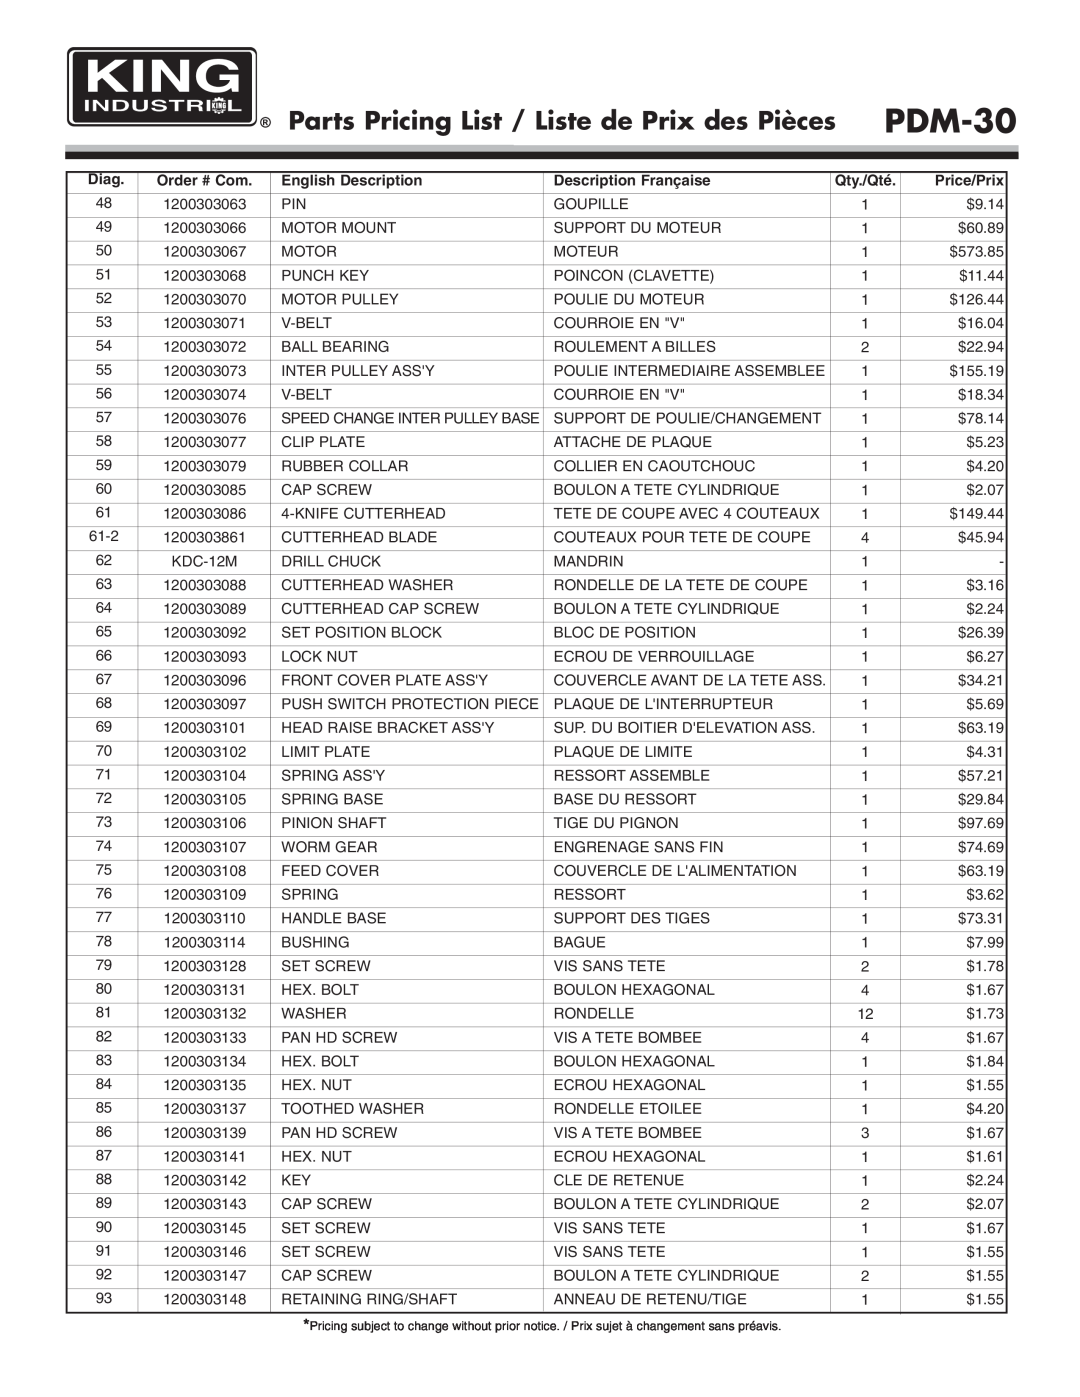 King Canada PDM-30 Parts Pricing List / Liste de Prix des Pièces, Diag, Order # Com, English Description, Qty./Qté 